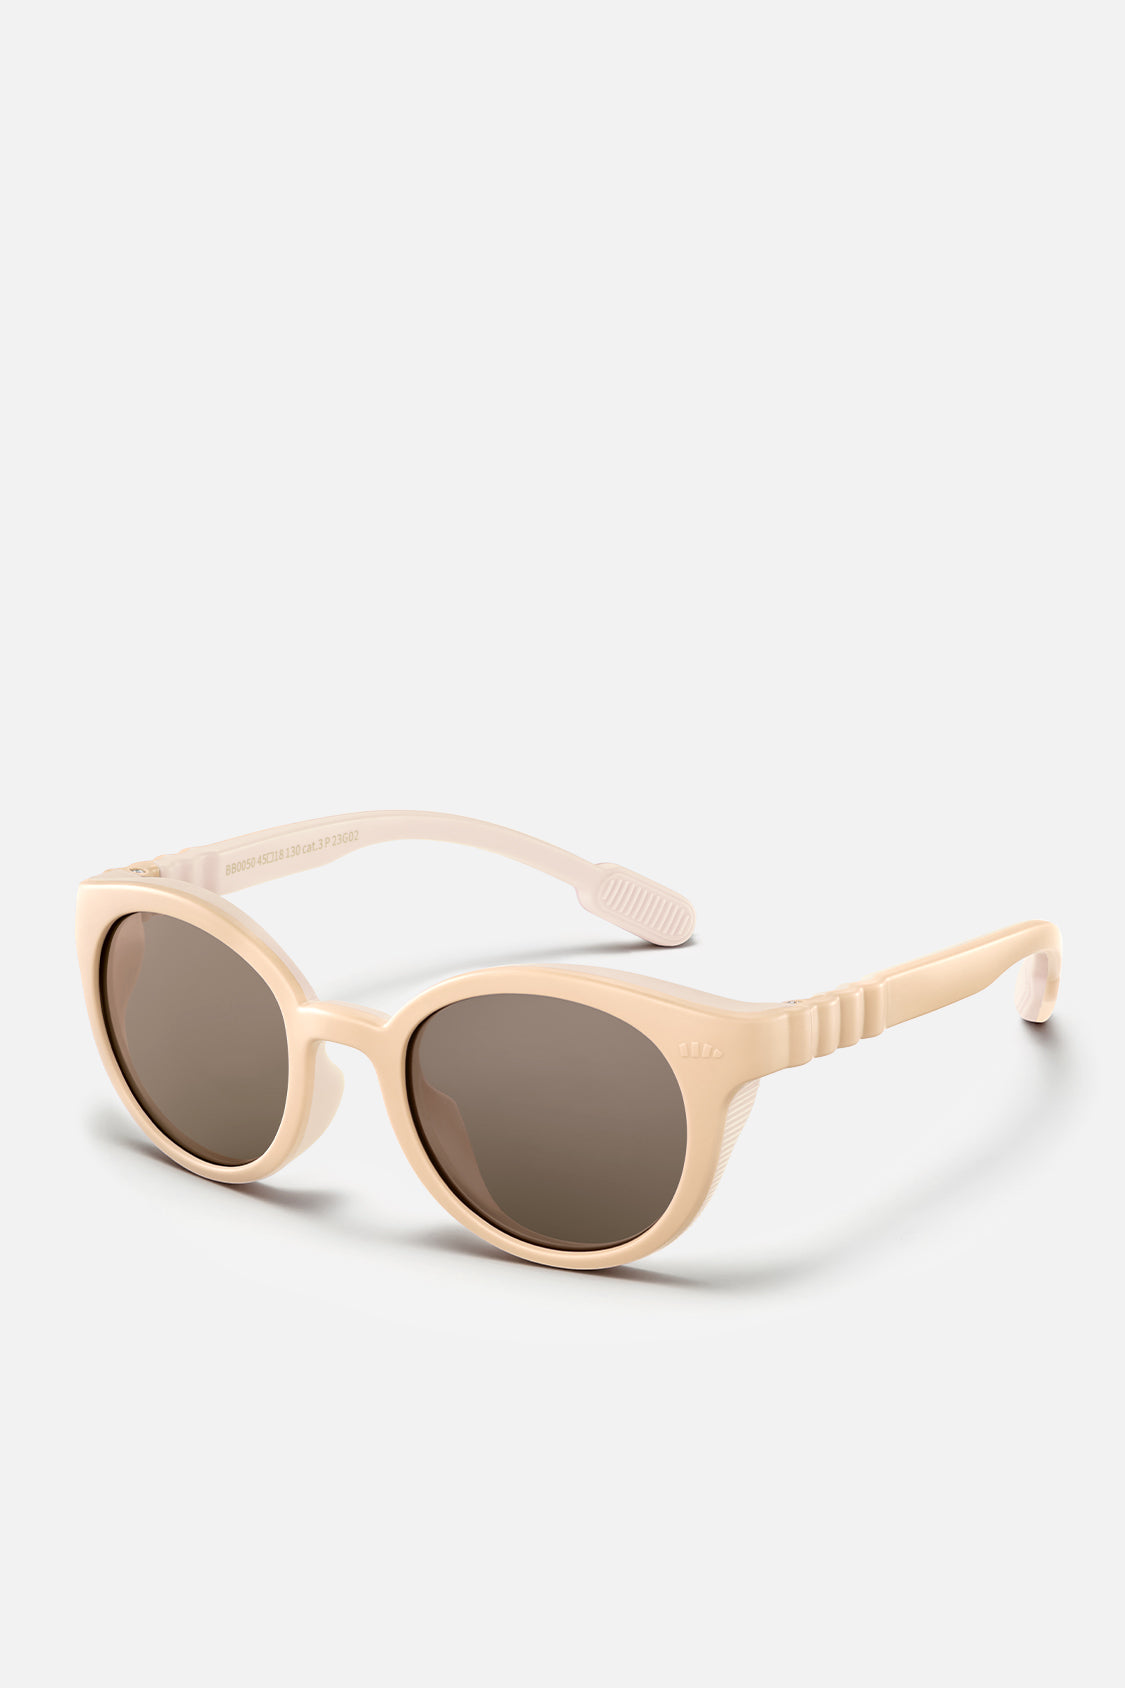 beneunder kid's protective sunglasses UV400 #color_desert honey sun